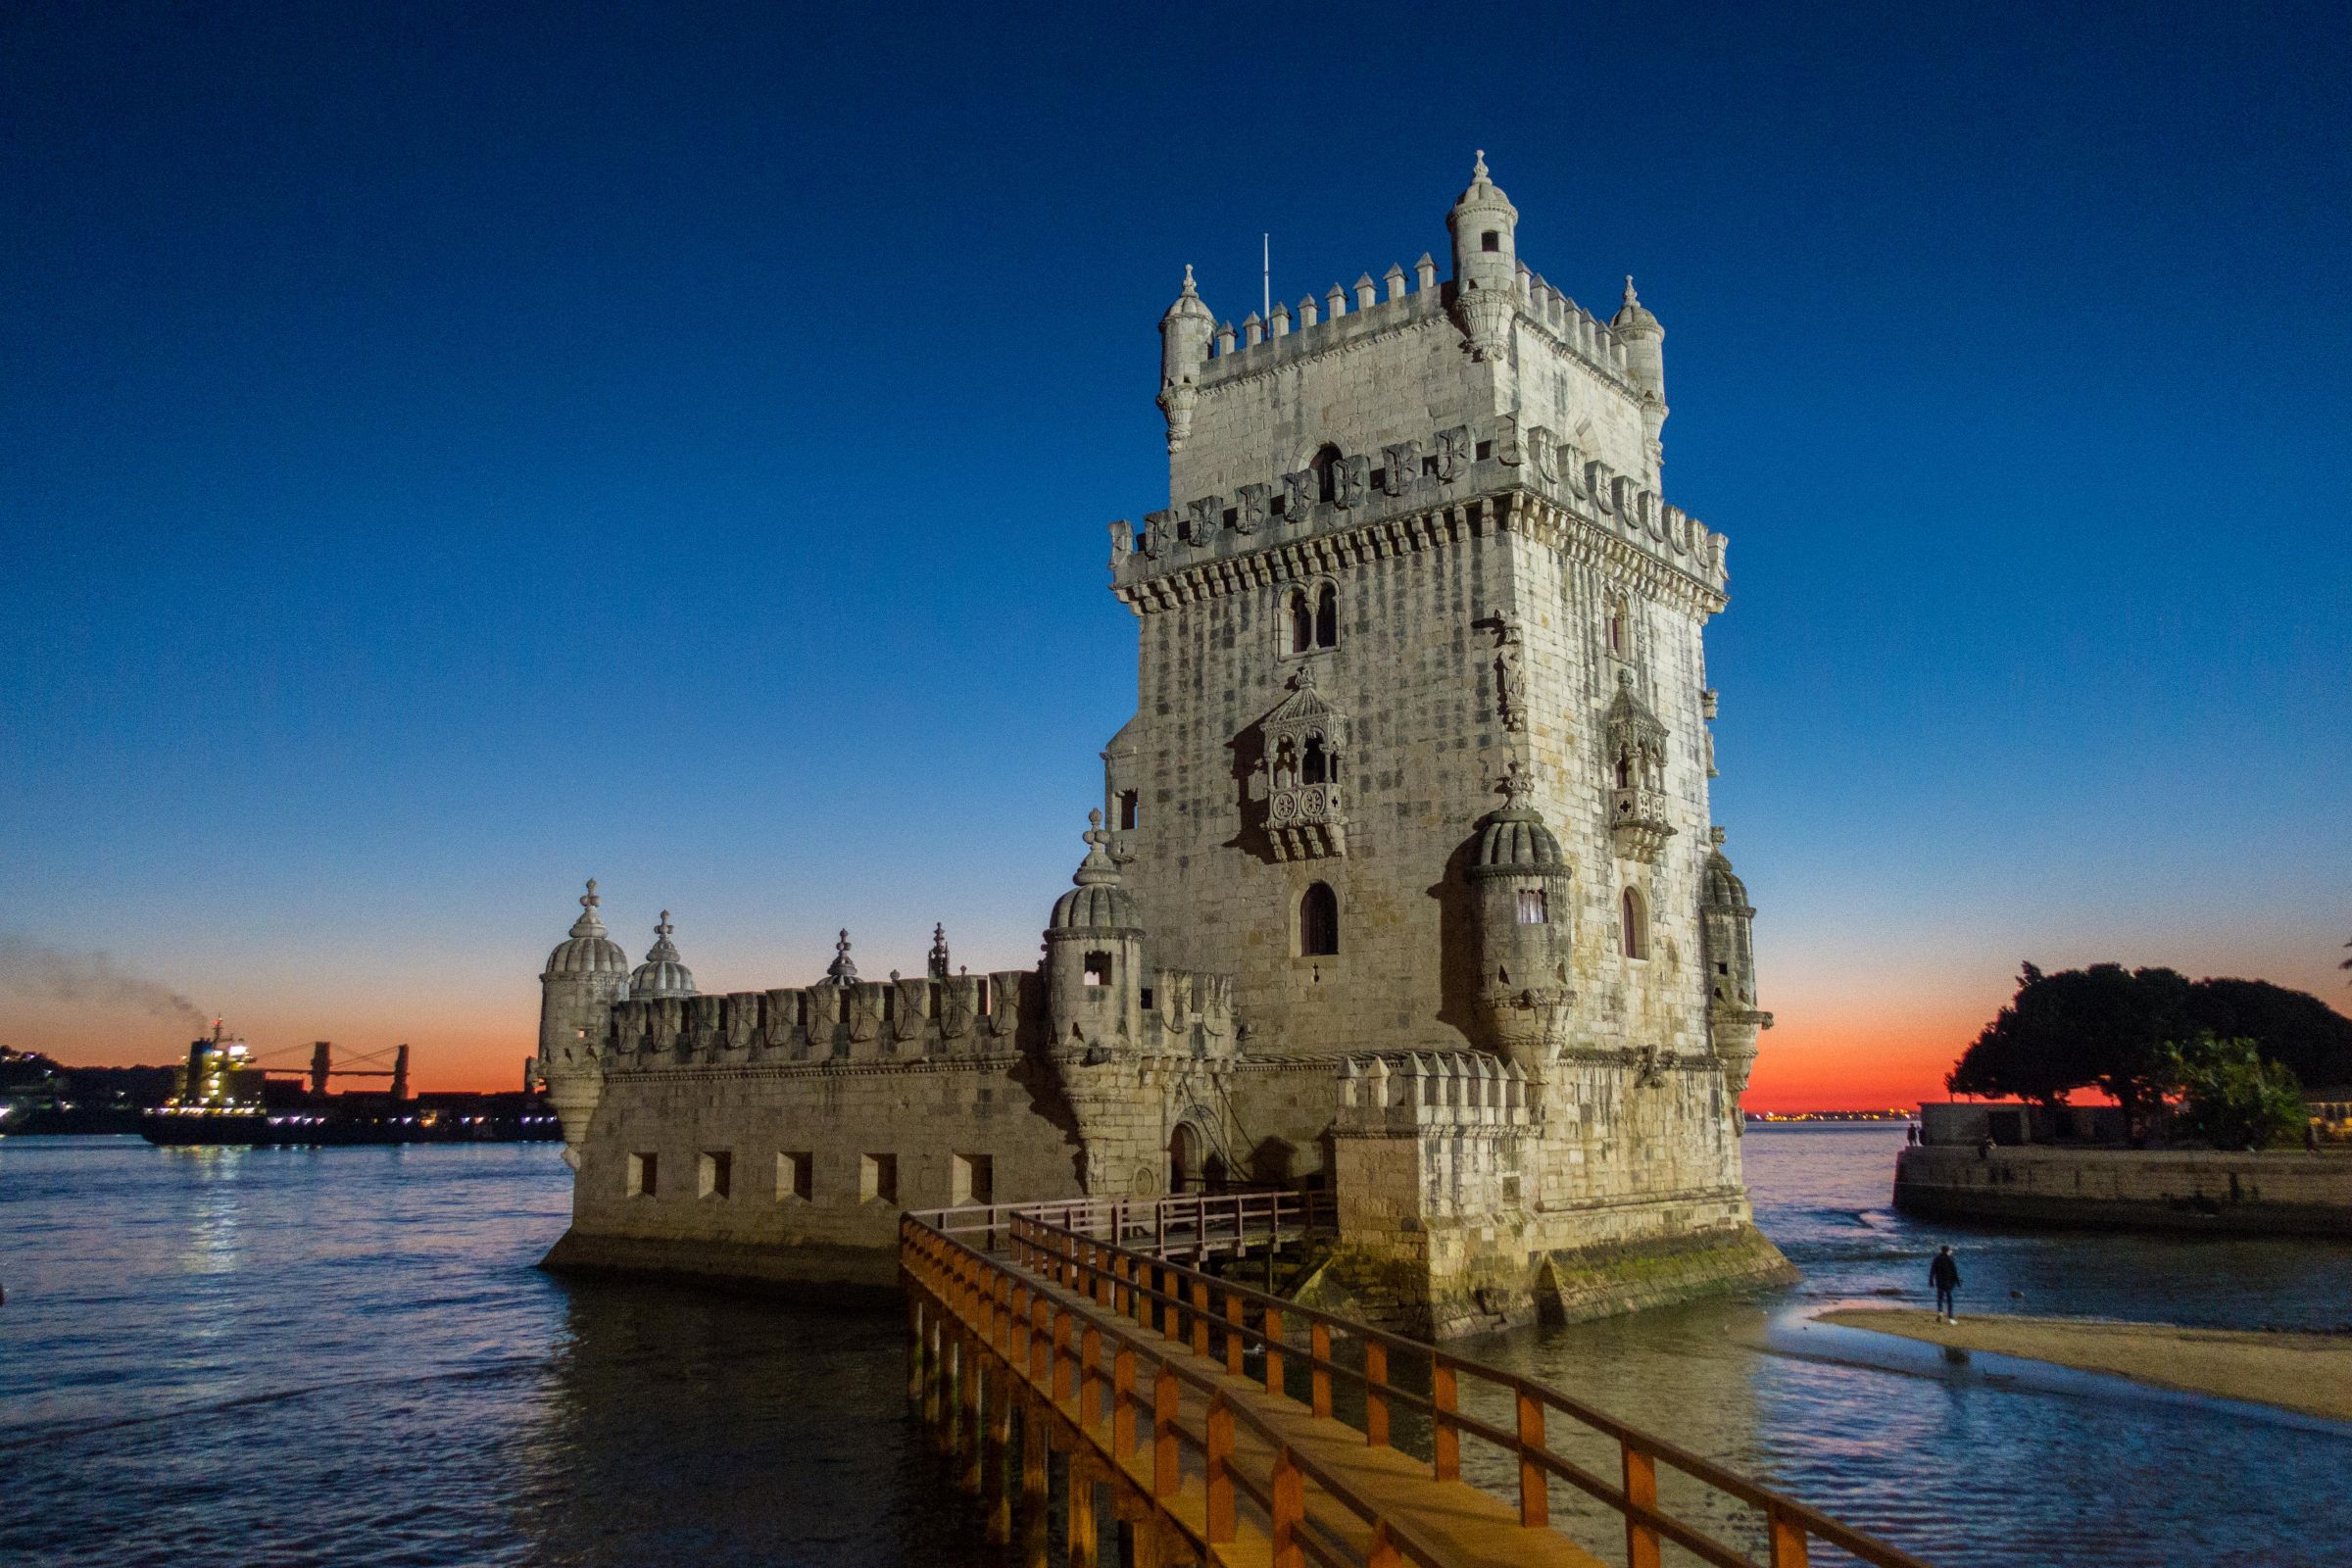 Torre de Belem - Belem Tower in Lisbon